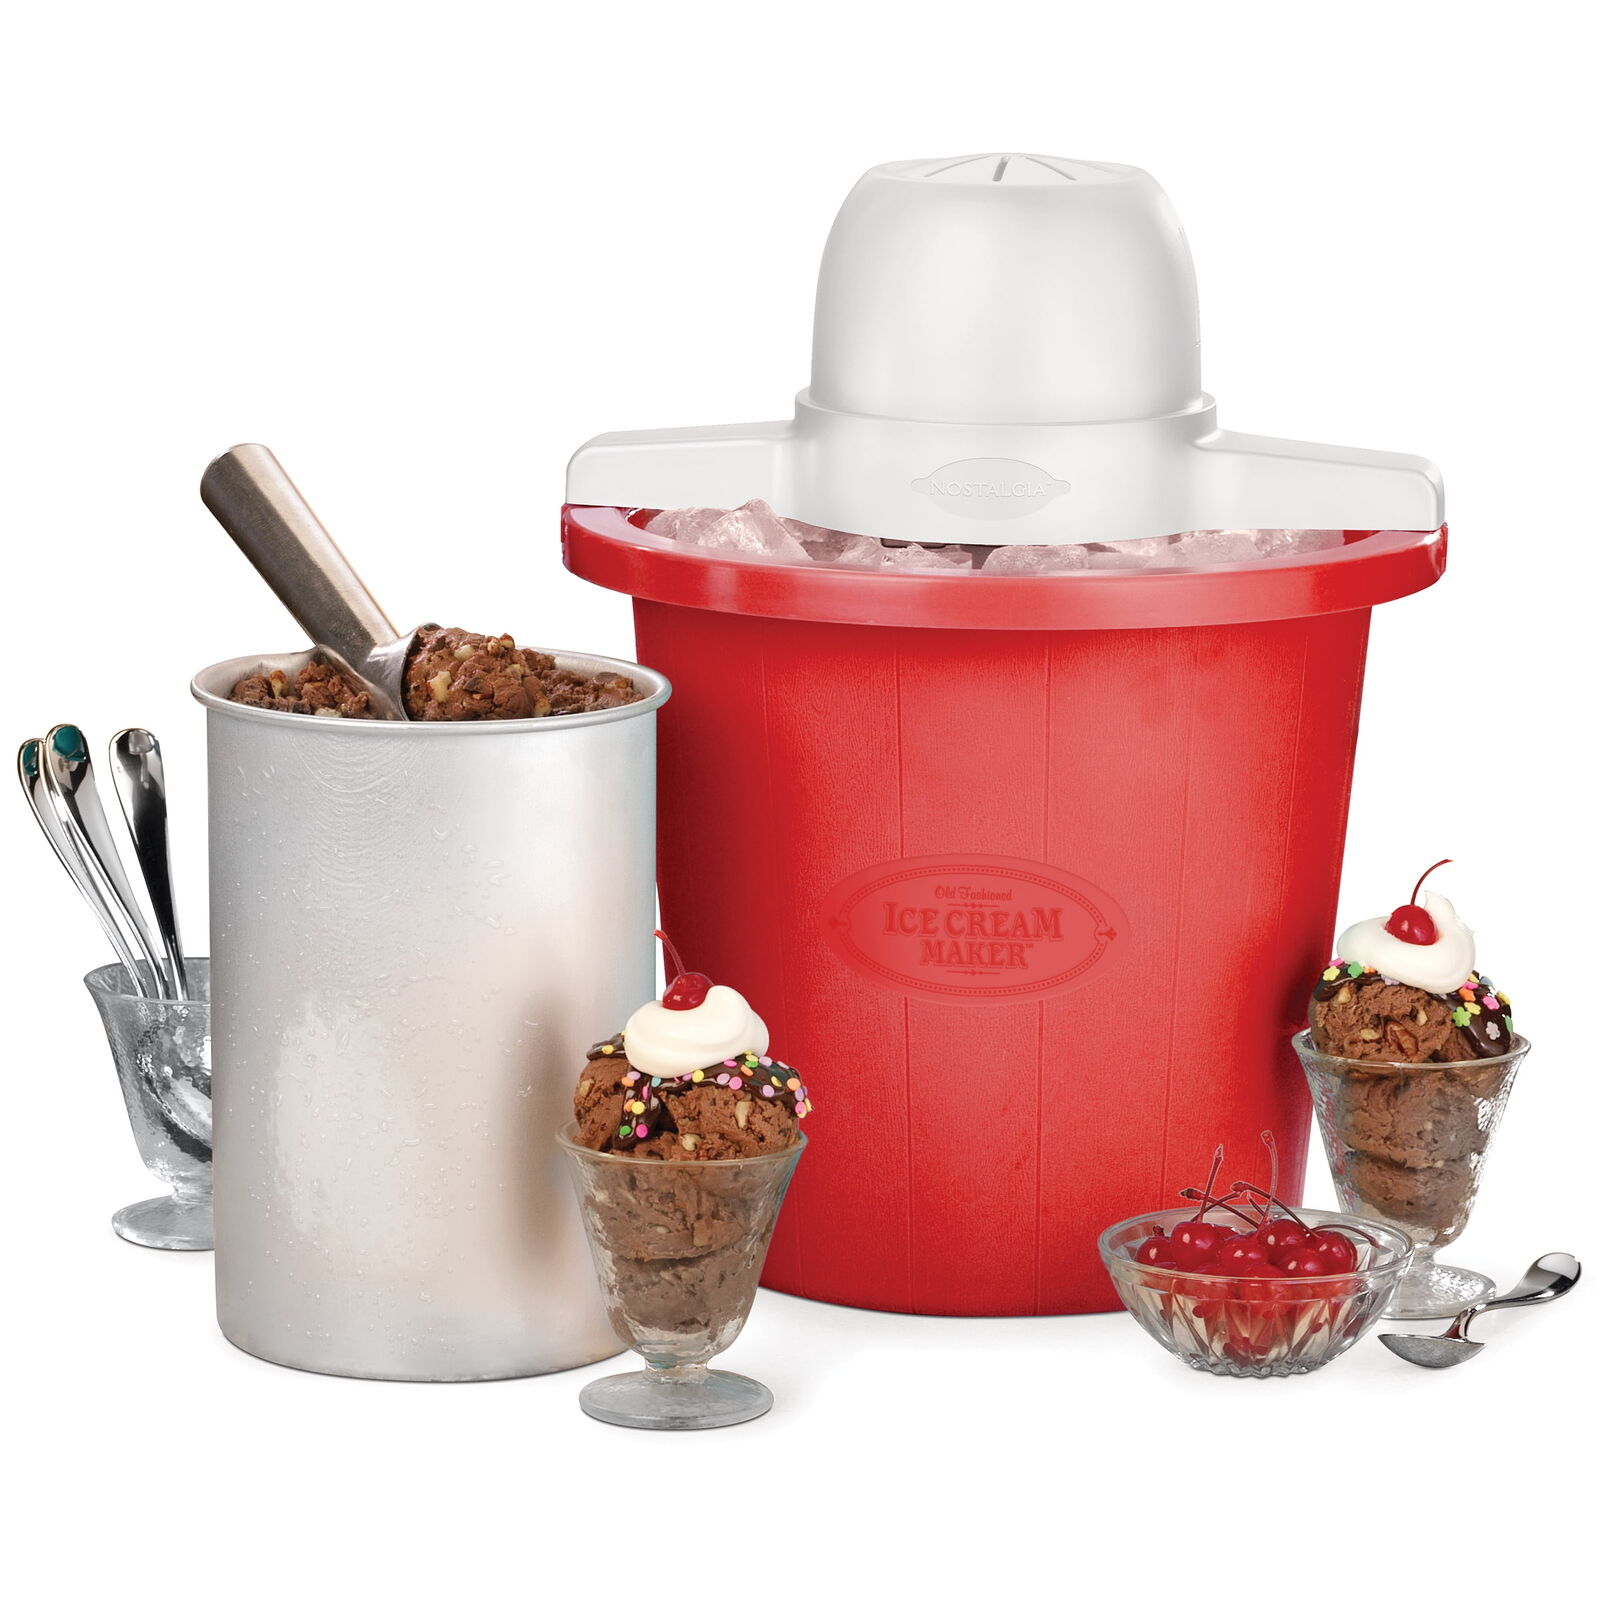 4-Quart Electric Ice Cream Maker, Red